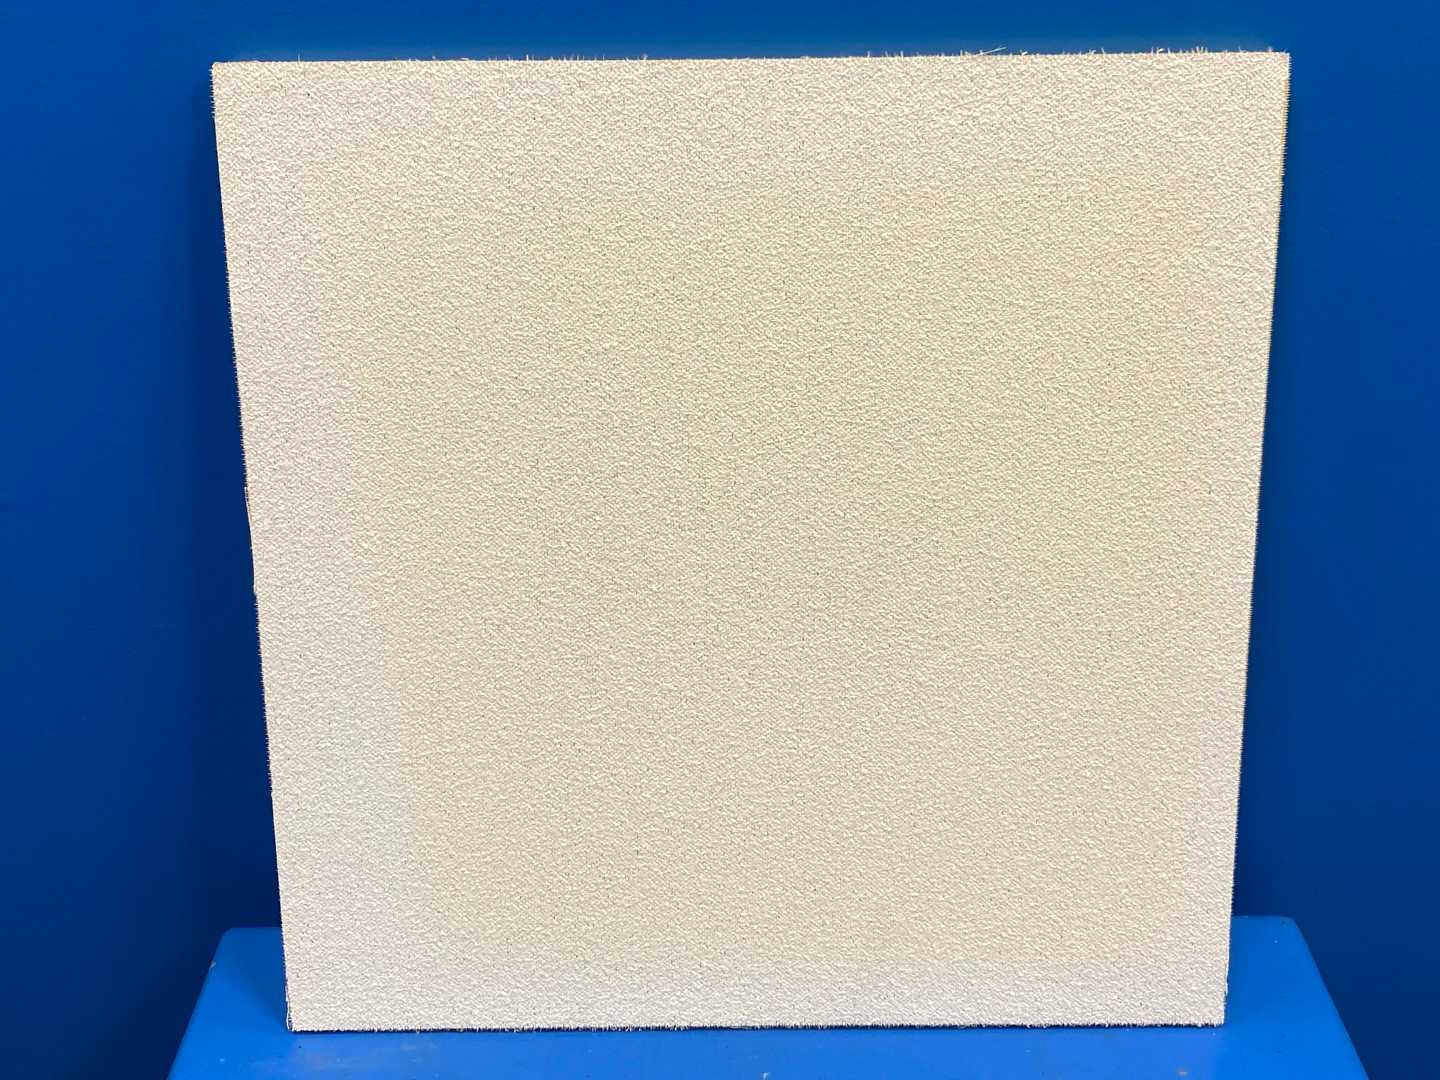 USG Premier 7012G WHITE Nubby Foil Acoustical Ceiling Tile 2x2 NEW 96sq ft